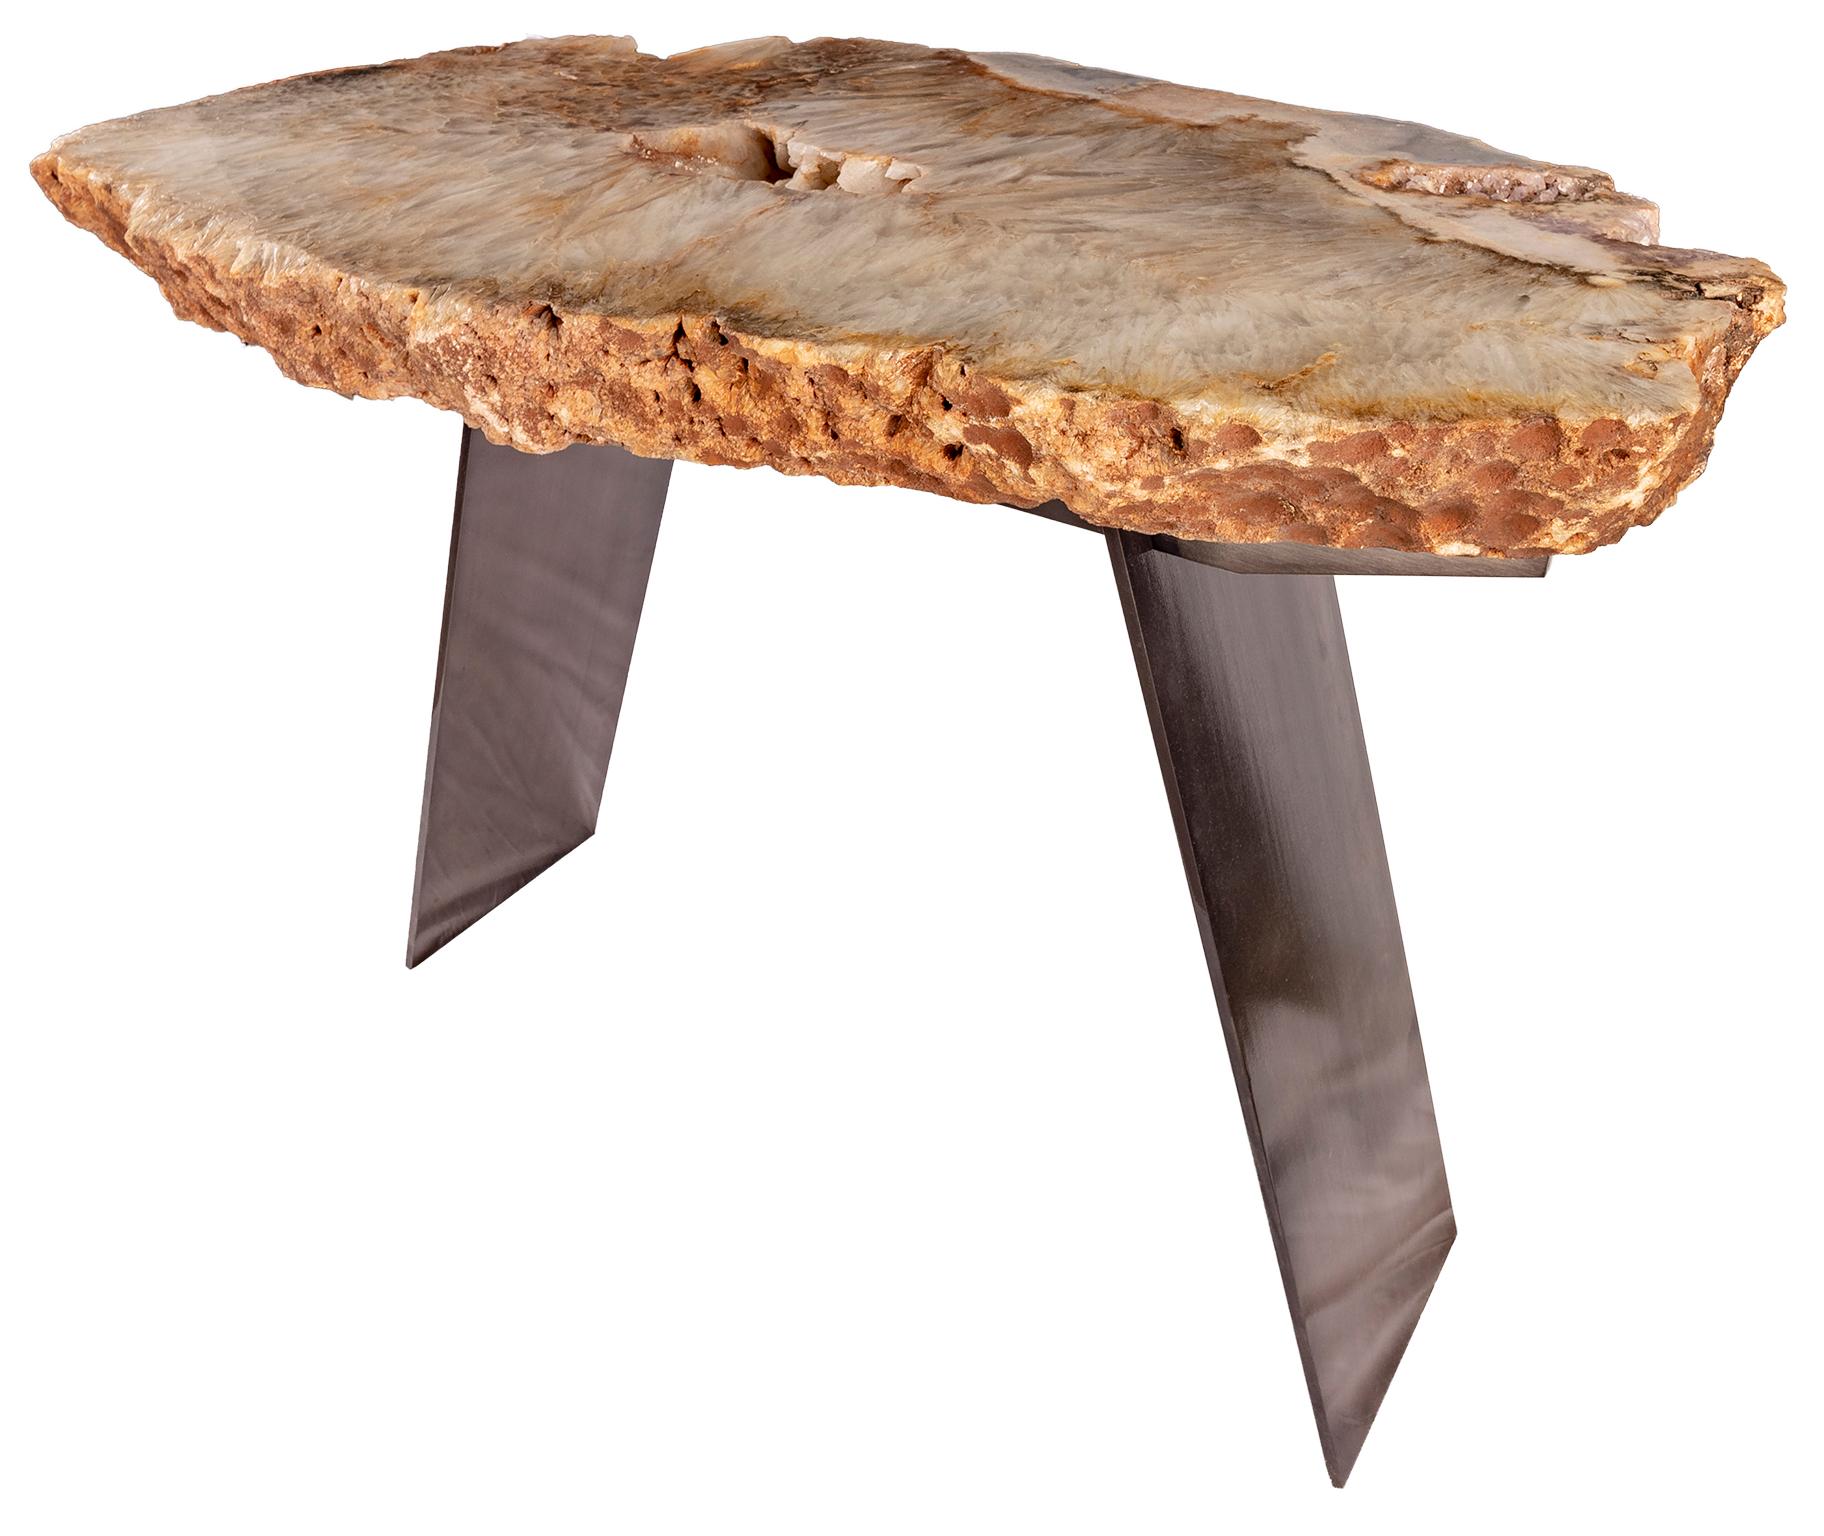 Console table, Brazilian quartz with metal base.
Tabletop measurements:
Measures: 26